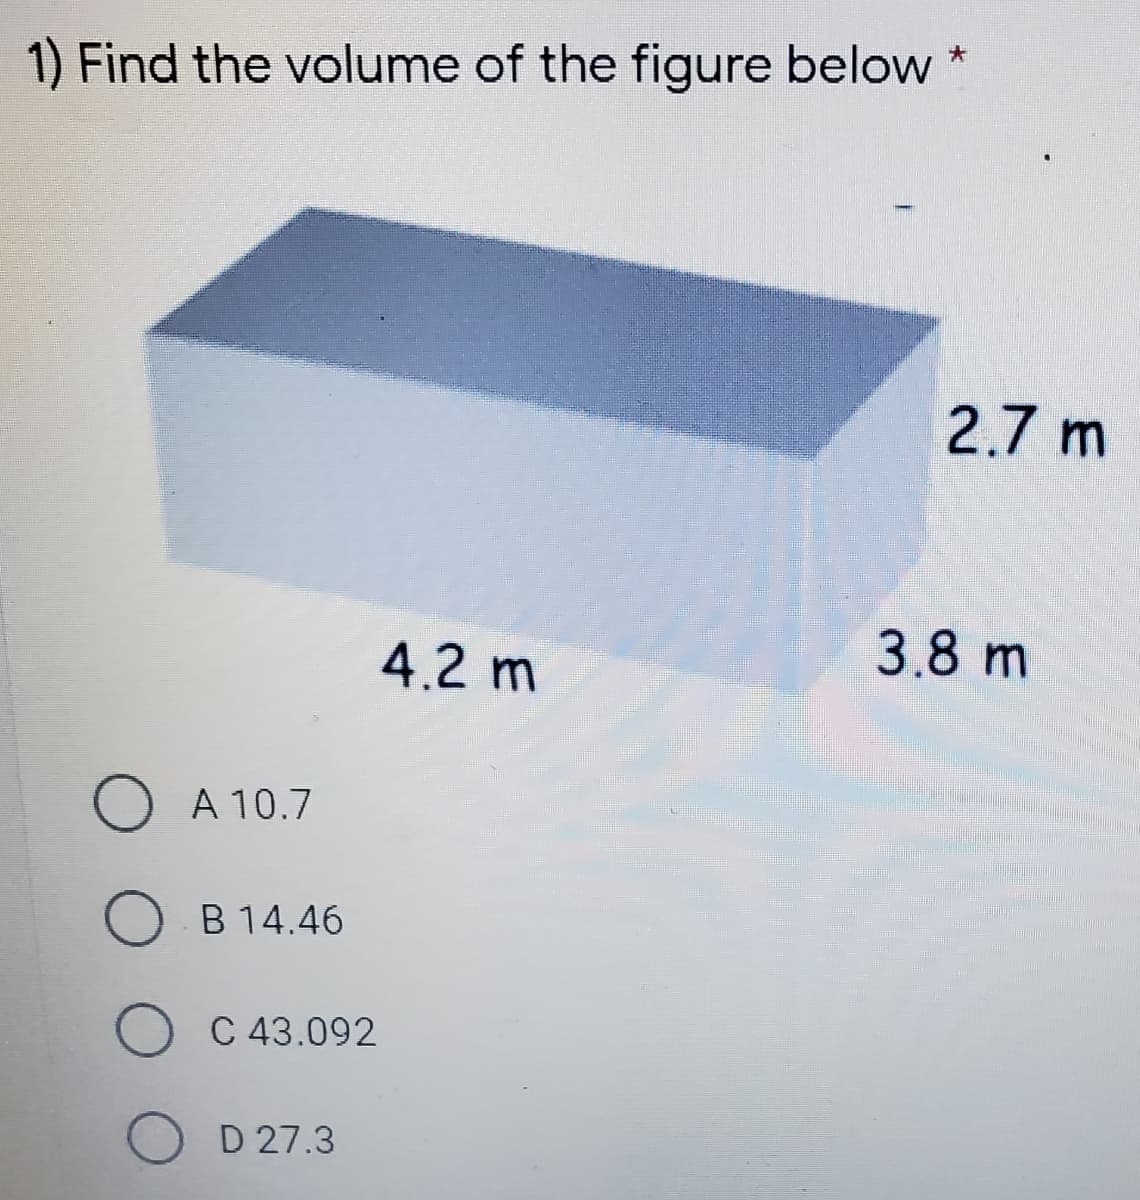 1) Find the volume of the figure below
2.7 m
4.2 m
3.8 m
A 10.7
B 14.46
O C 43.092
O D 27.3
